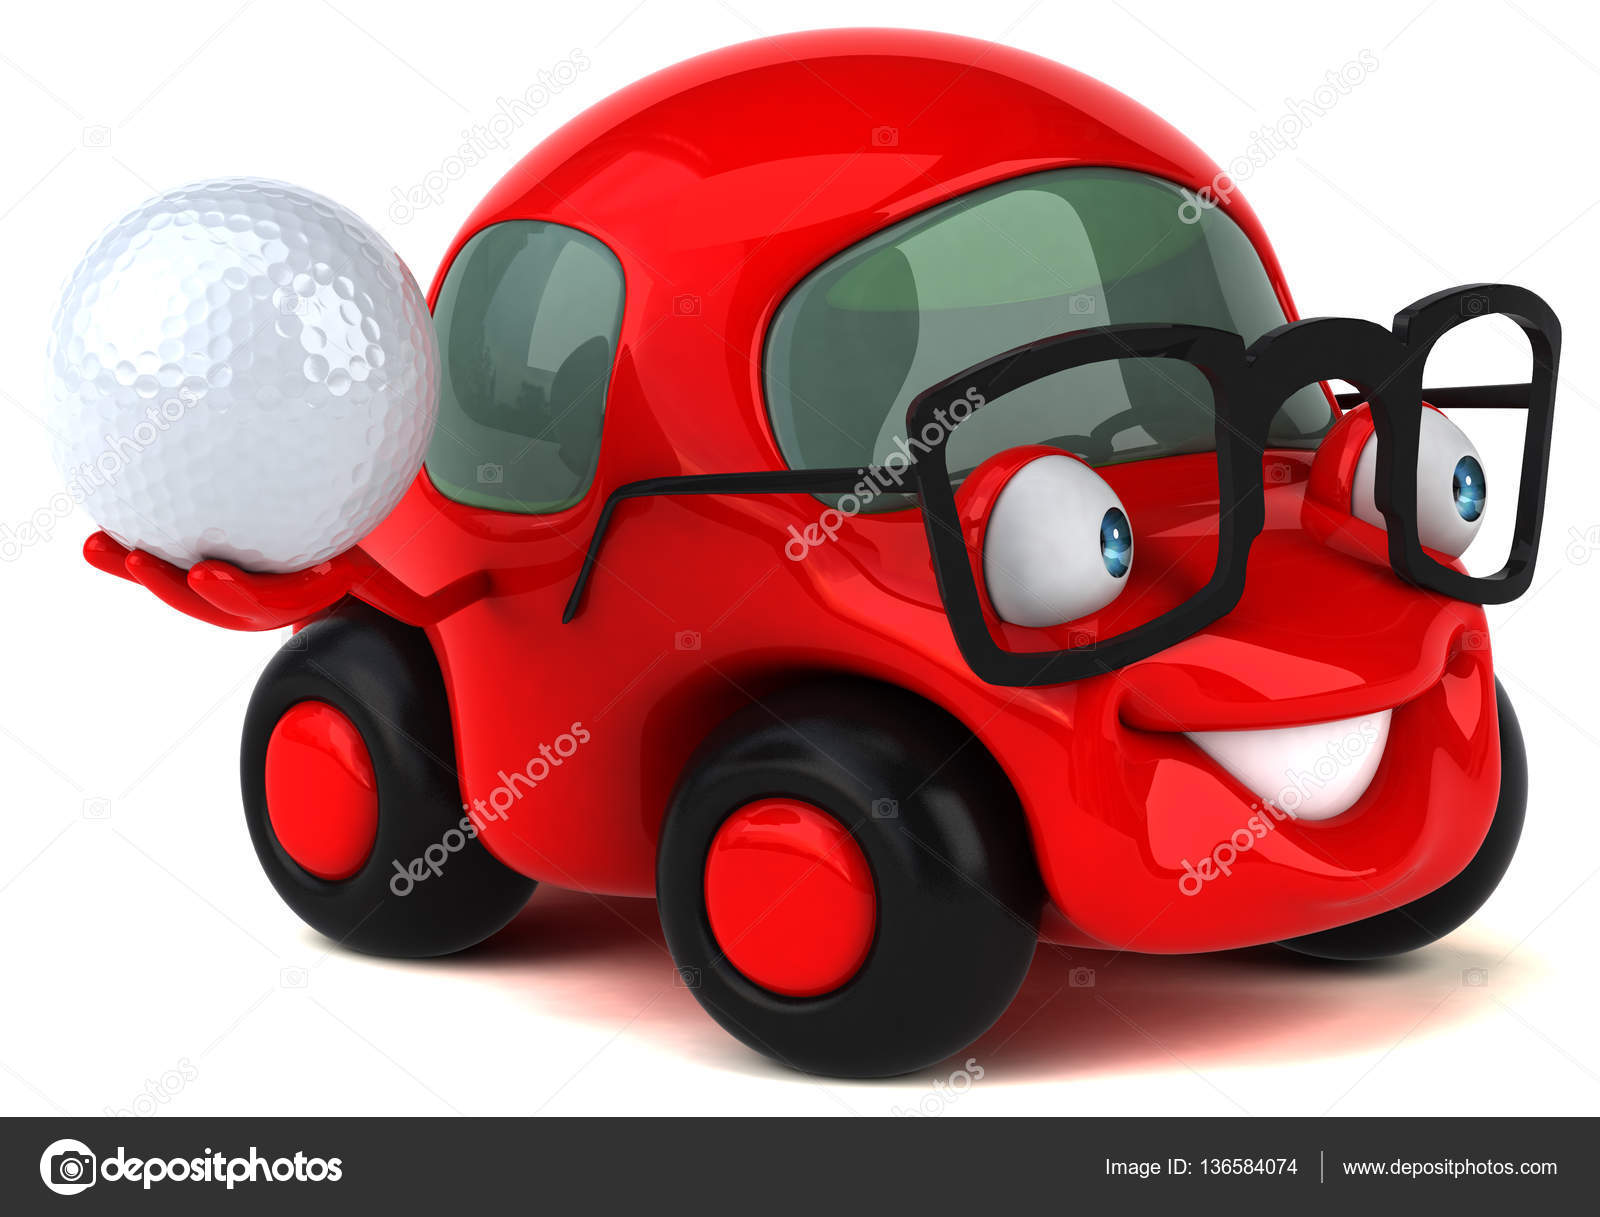 Vetor 3d do conceito de competição de esporte e jogo de carrinho de golfe